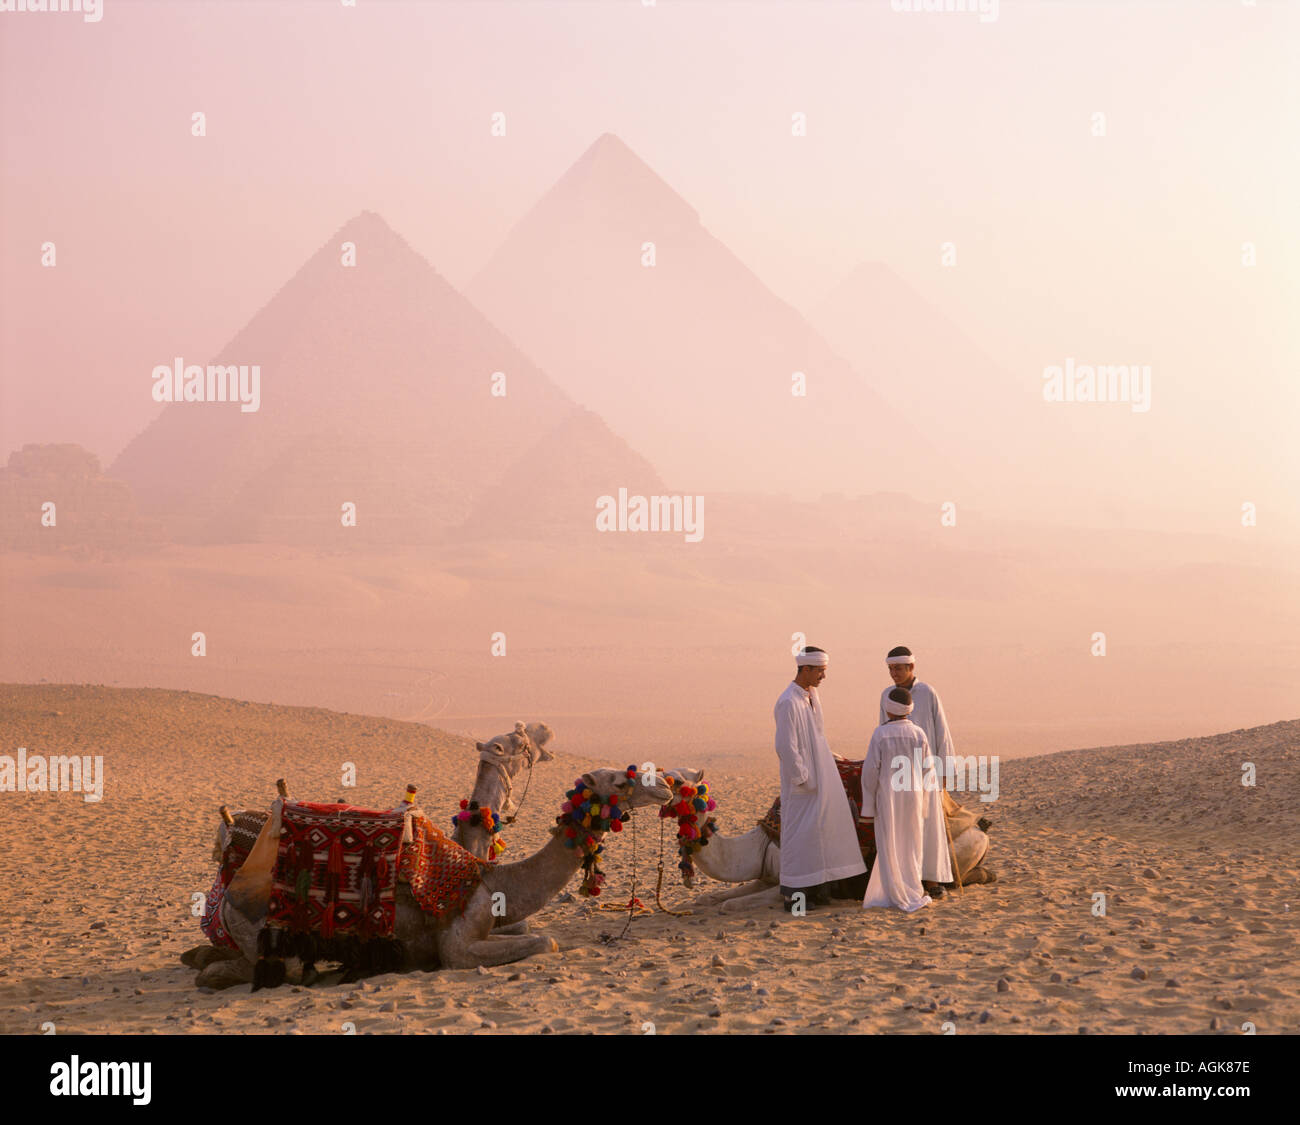 Les chameaux et pyramides Gizeh Le Caire Egypte Banque D'Images